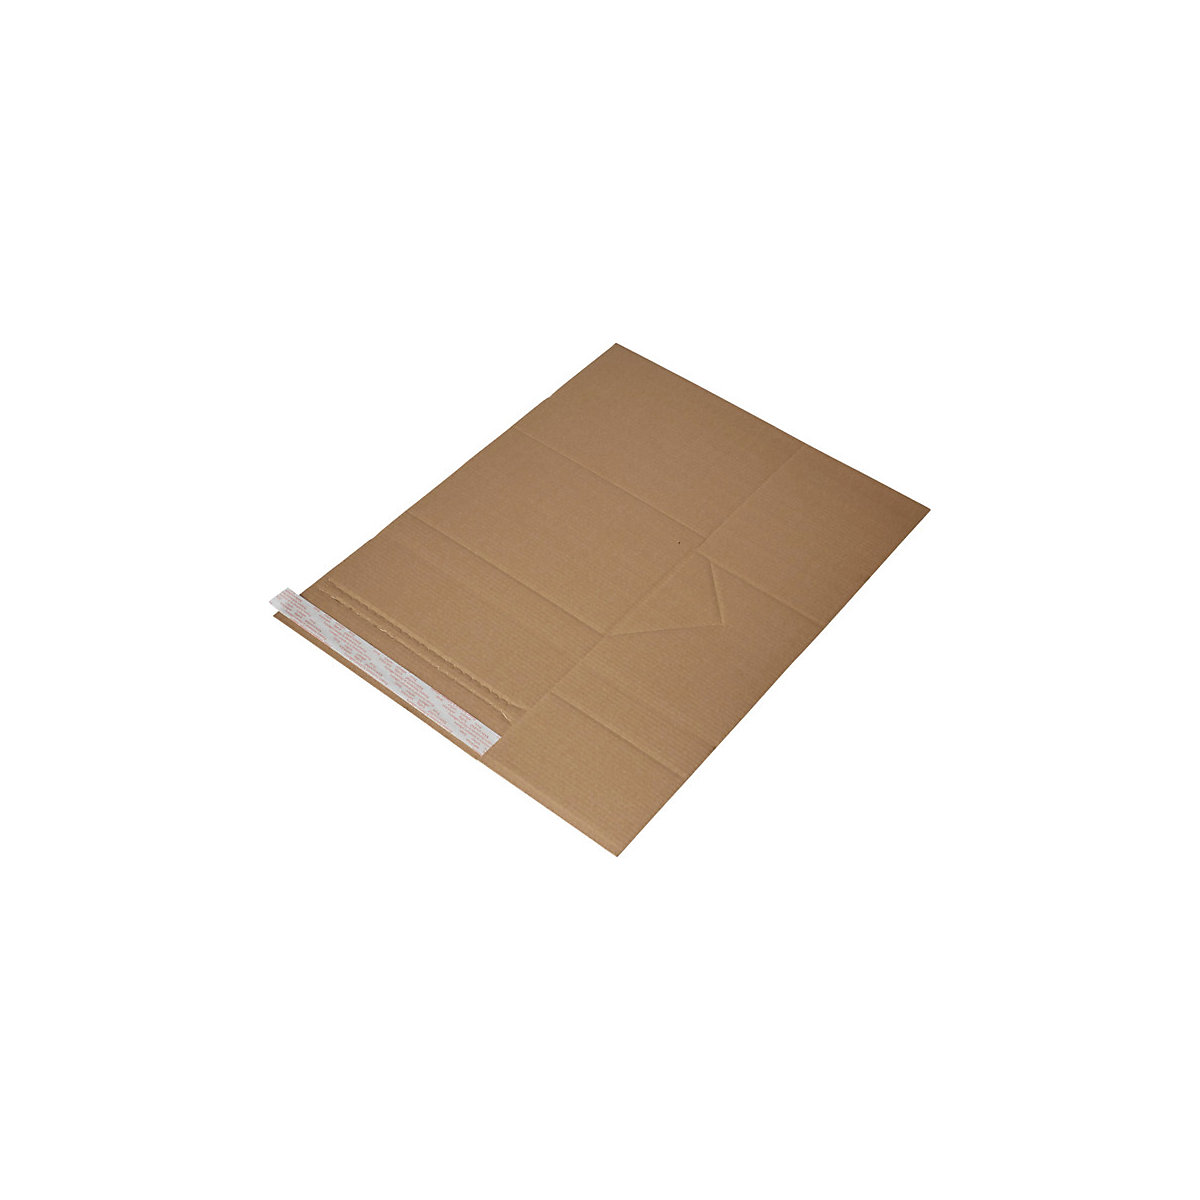 Imballaggio universale Drehfix – flow, con chiusura autoadesiva, lungh. x largh. 250 x 185 mm, a partire da 30 pz.-5